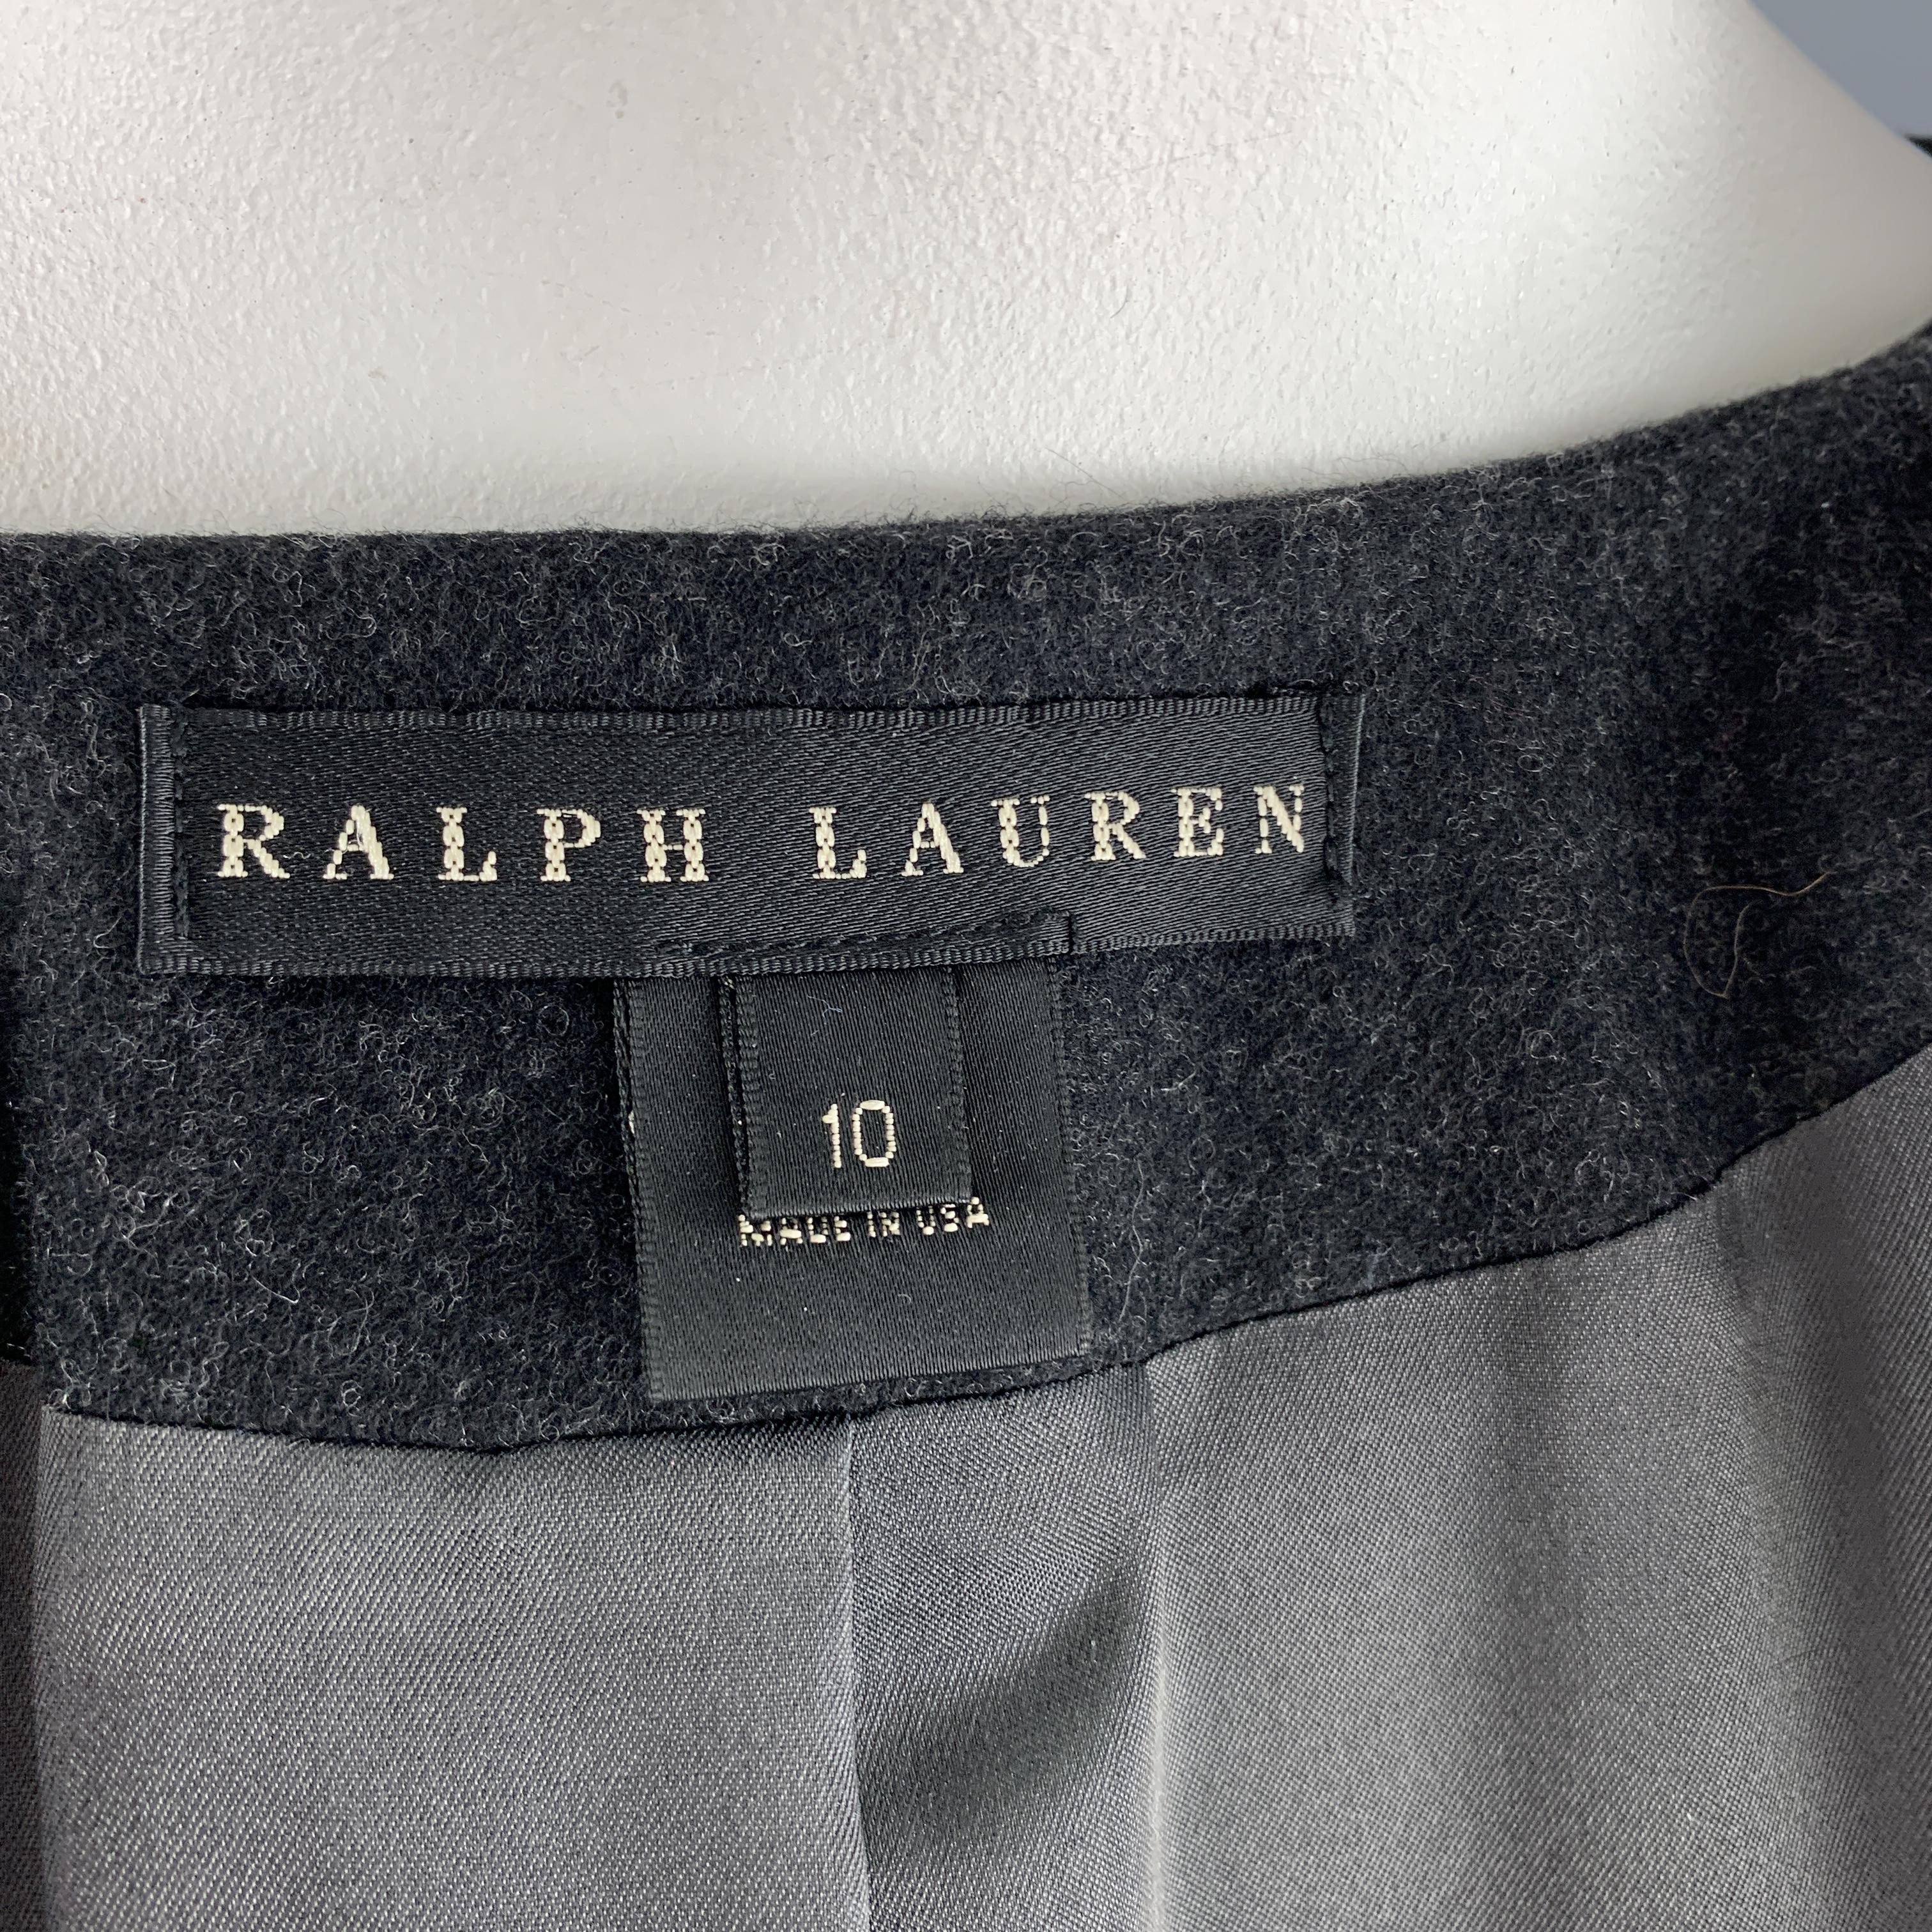 RALPH LAUREN 10 Charcoal Merino Wool Blend Collarless Drop Waist Ruffle Coat 1